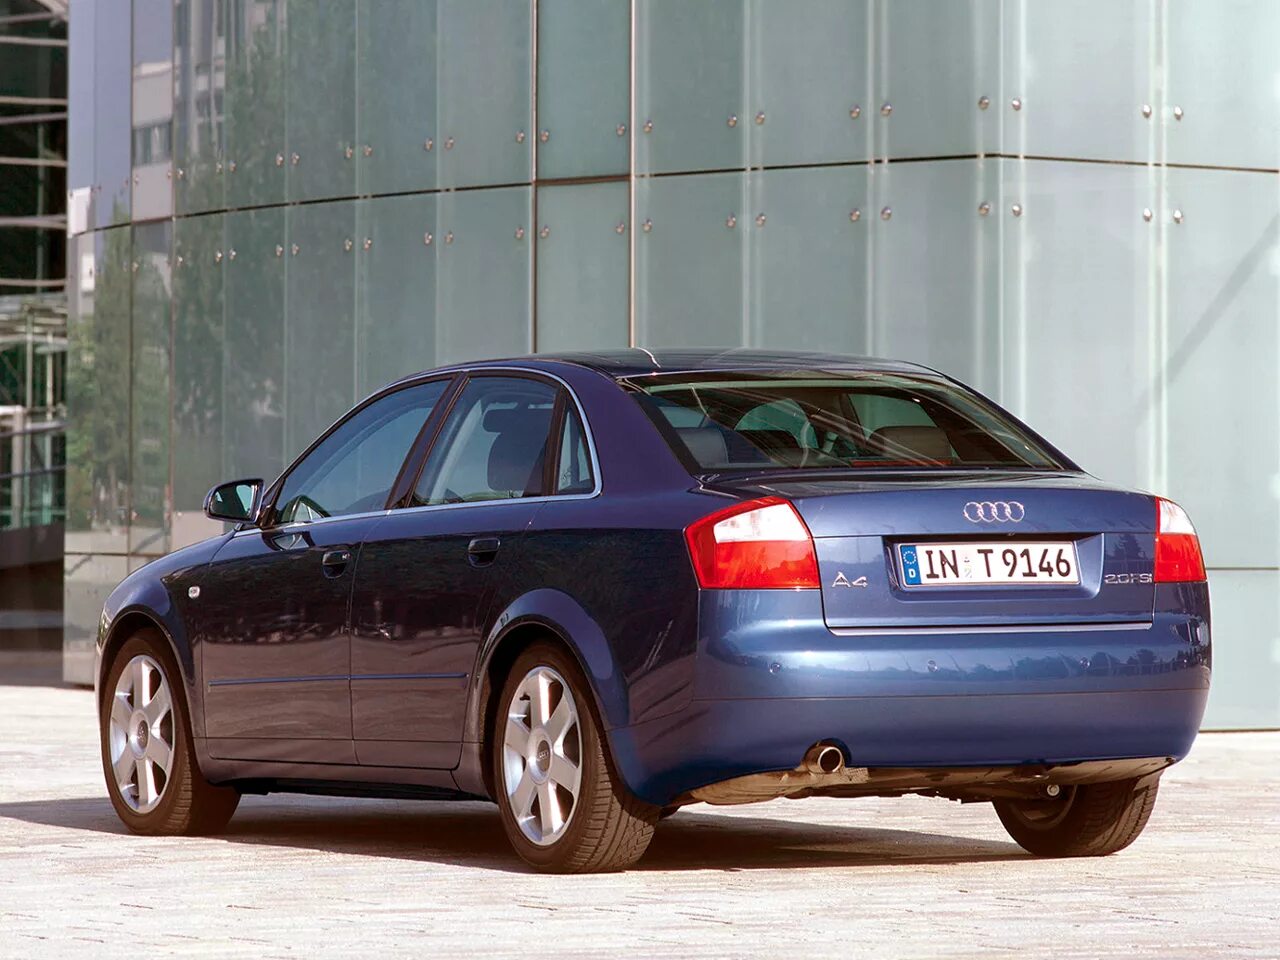 Ауди 4 2001 год. Audi a4 b6 sedan. 2000 Audi a4 sedan. Audi a4 b6 2004. Audi a4 b6 2000.